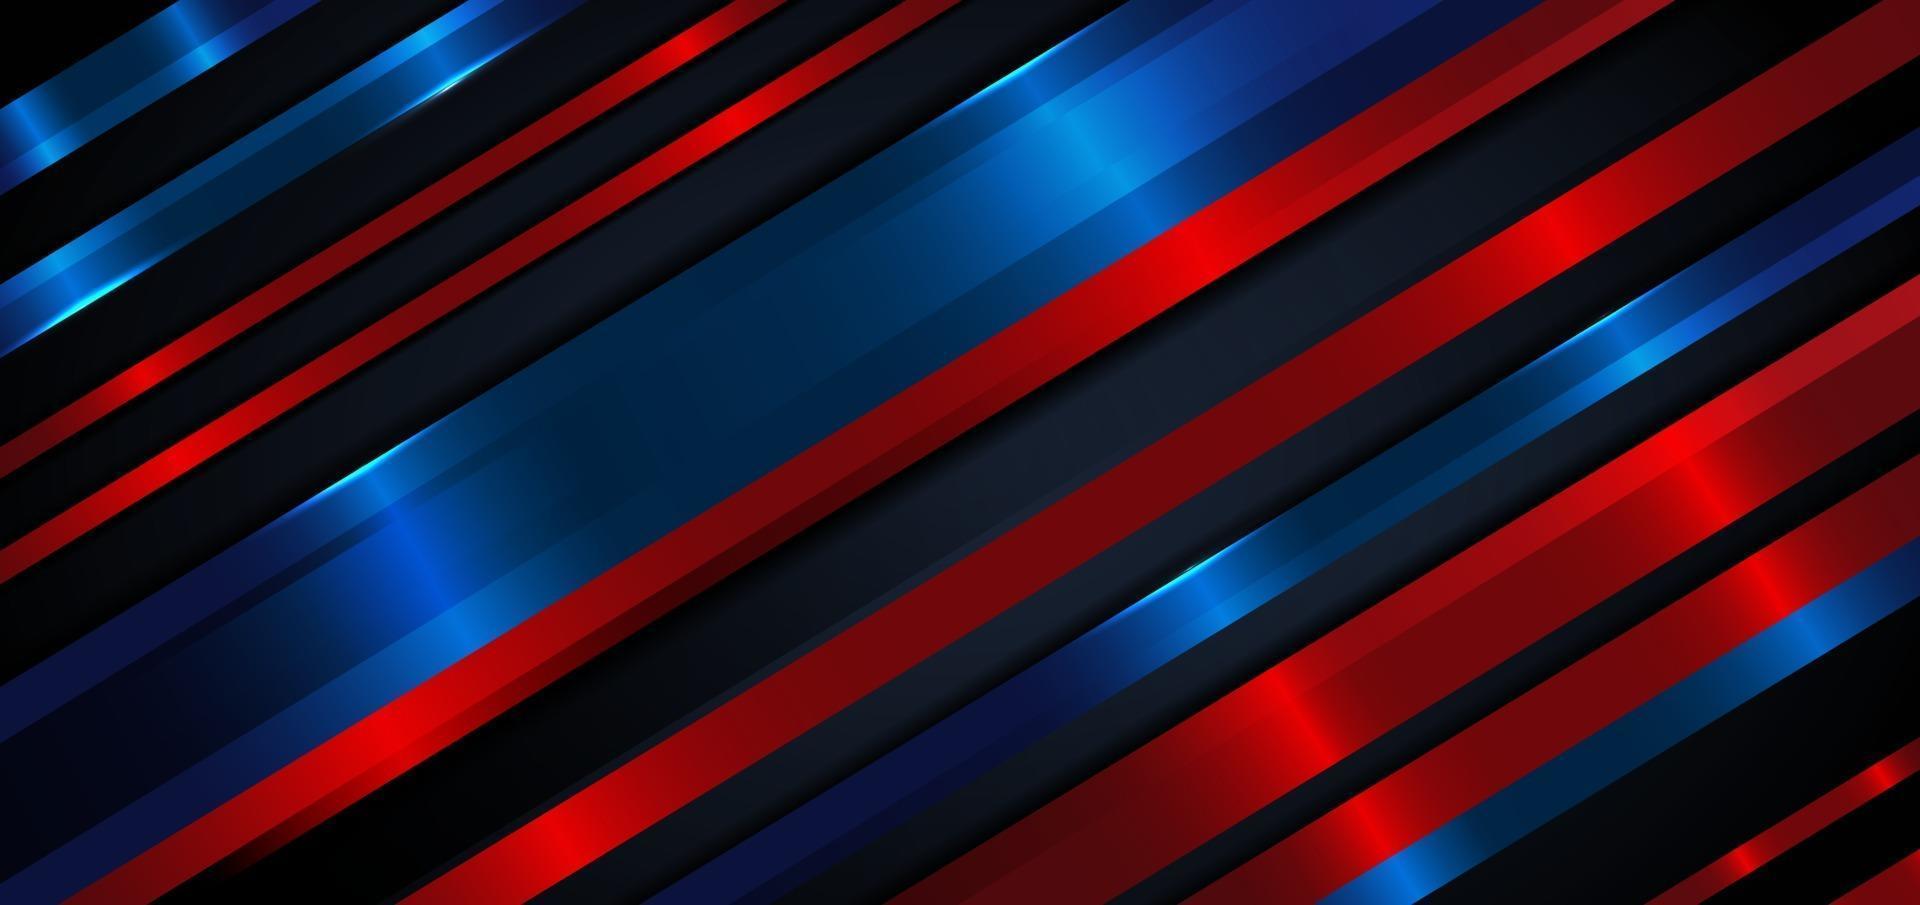 Fondo de líneas de rayas de color azul oscuro y rojo diagonal abstracto capas superpuestas decoración fondo de efecto de luz azul vector